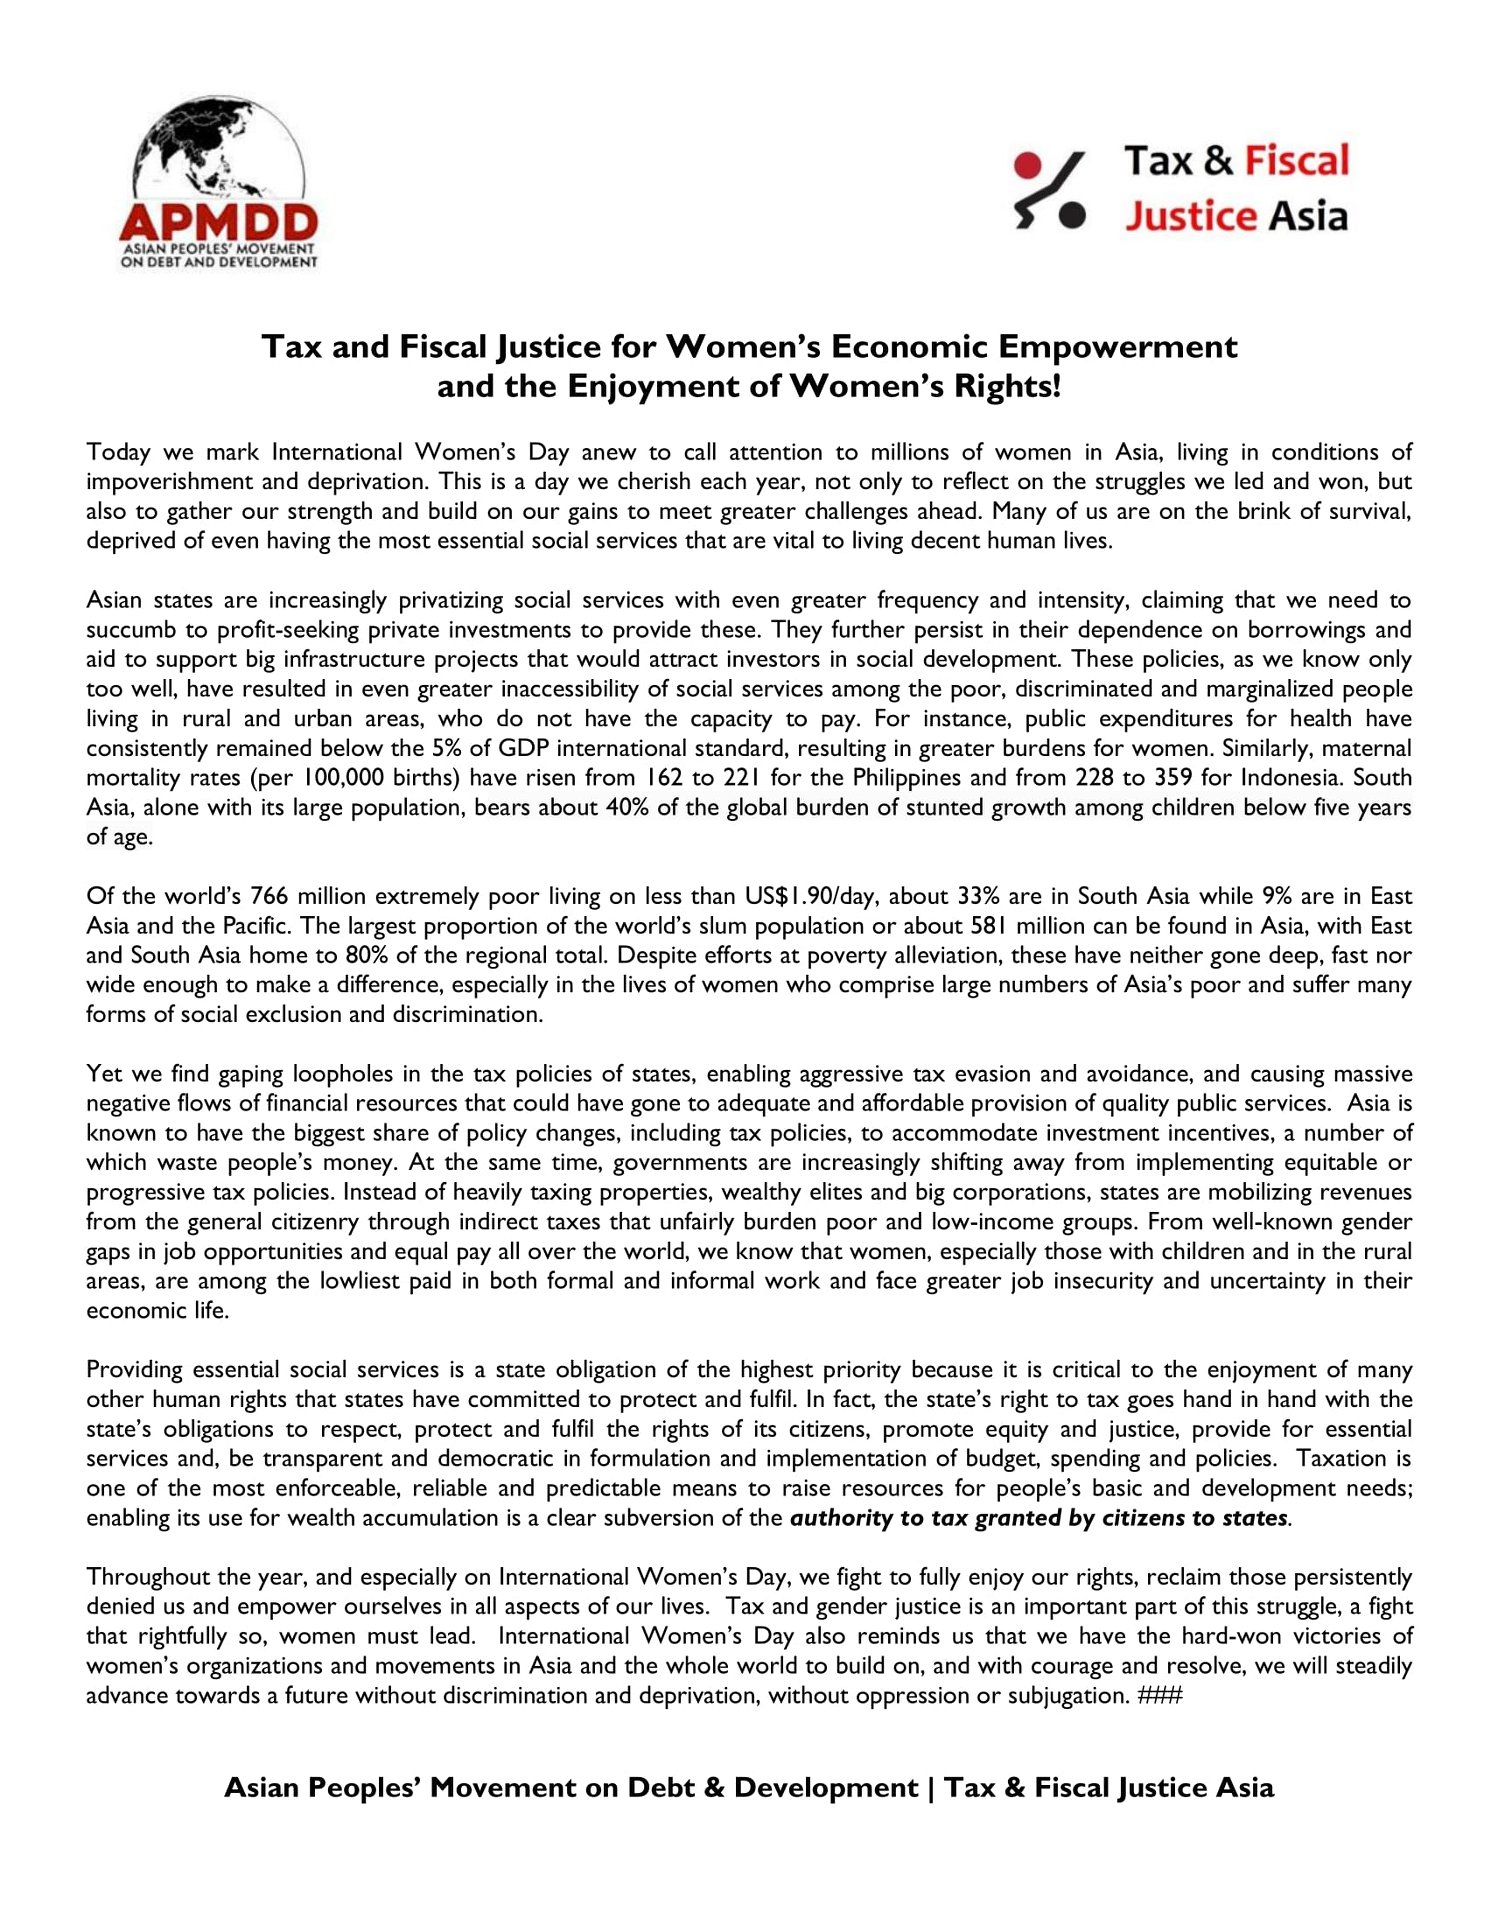 2018-03-08-Joint TAFJA And APMDD Statement For International Women's Day-EN-IMAGEM 1